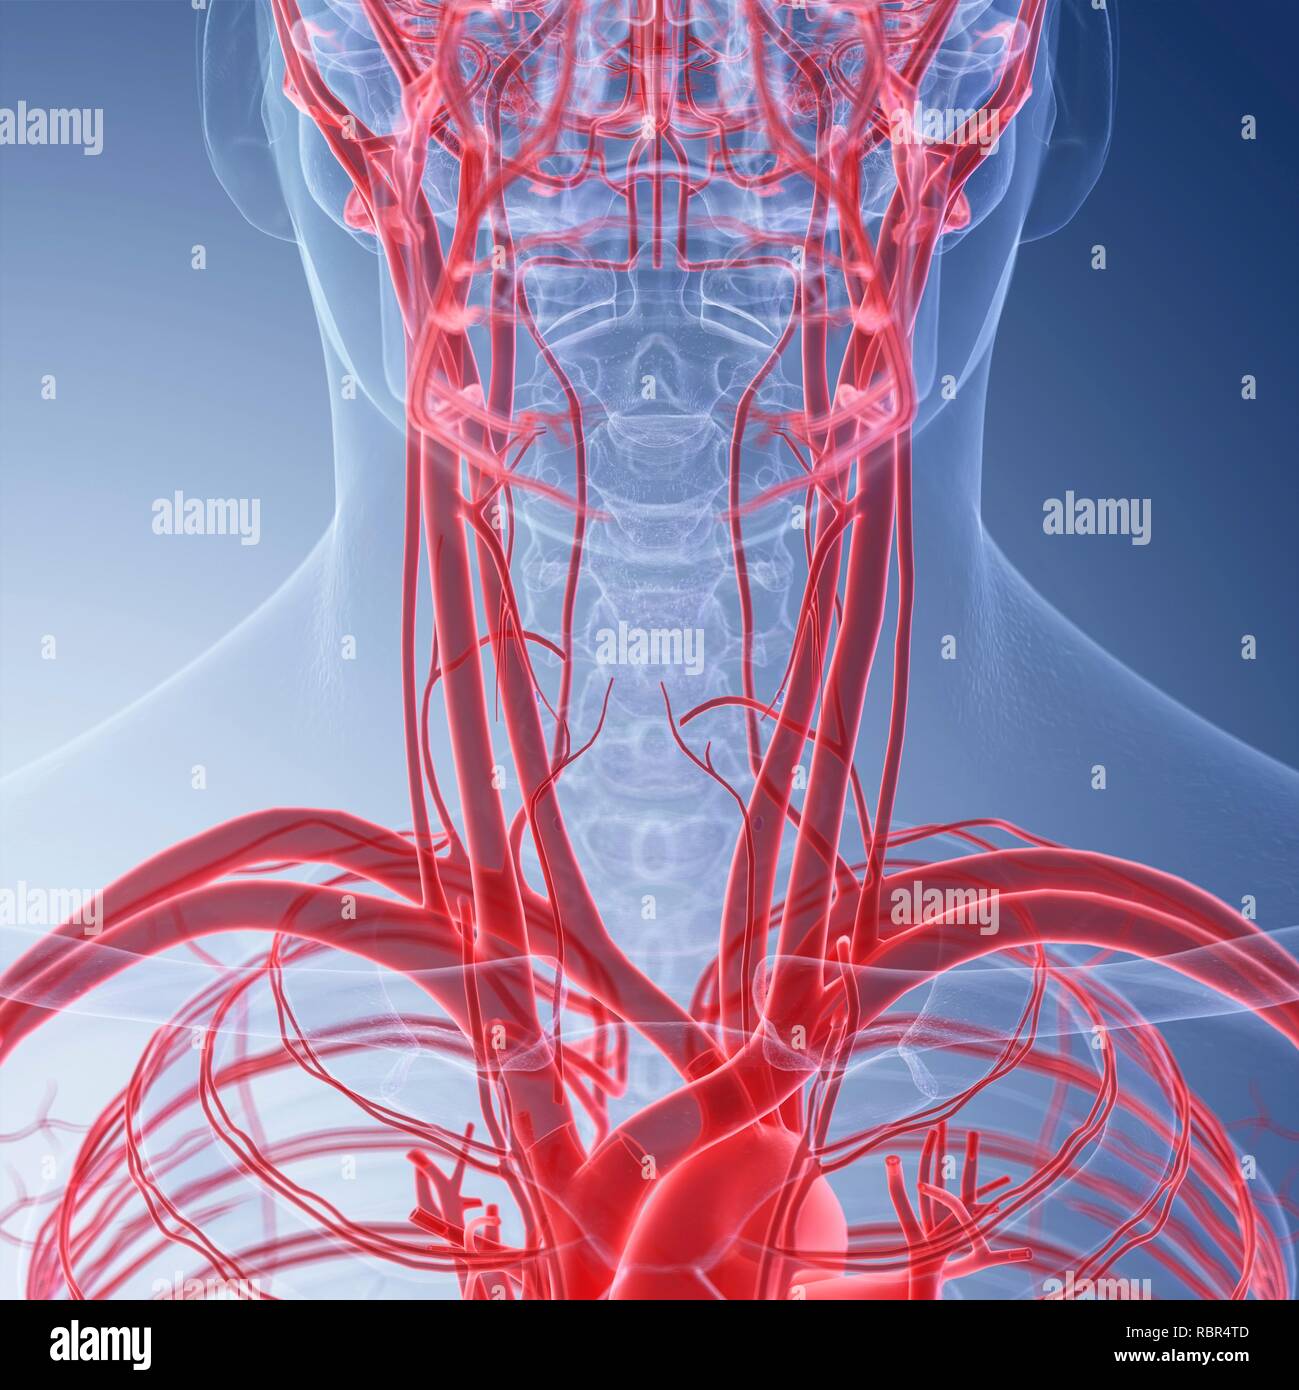 Vasi sanguigni del collo immagini e fotografie stock ad alta risoluzione -  Alamy